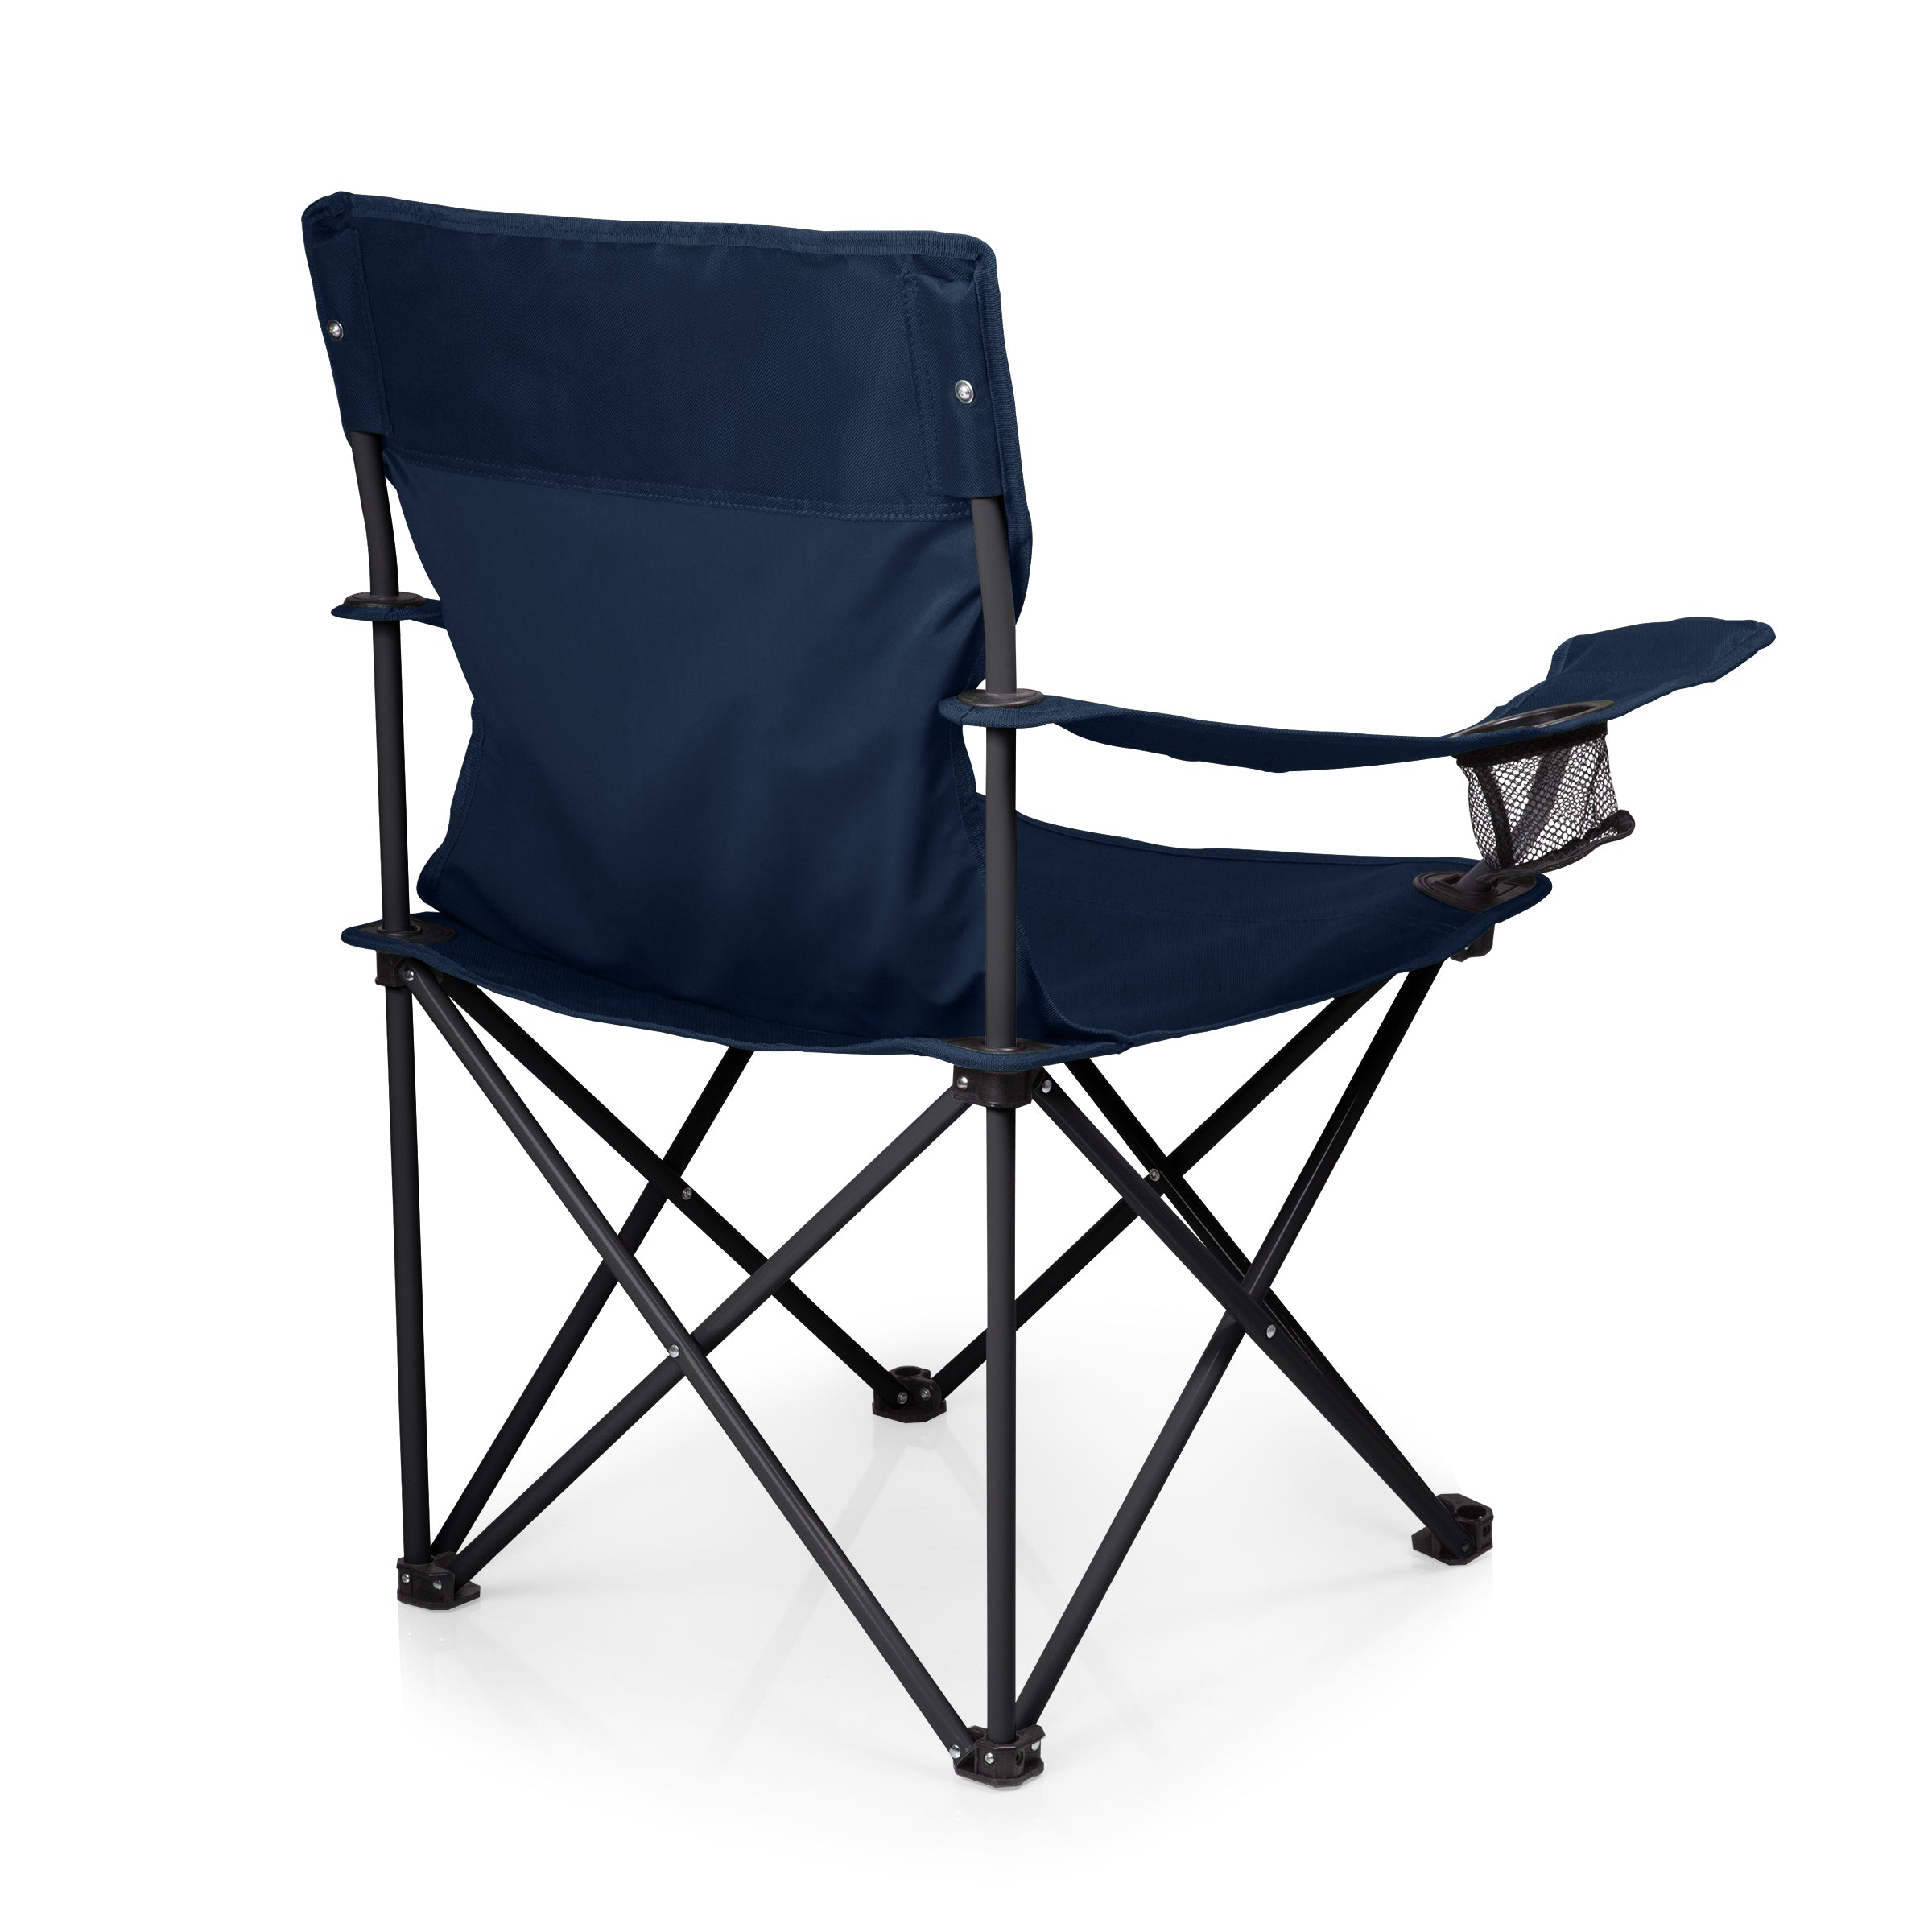 PTZ Camp Chair